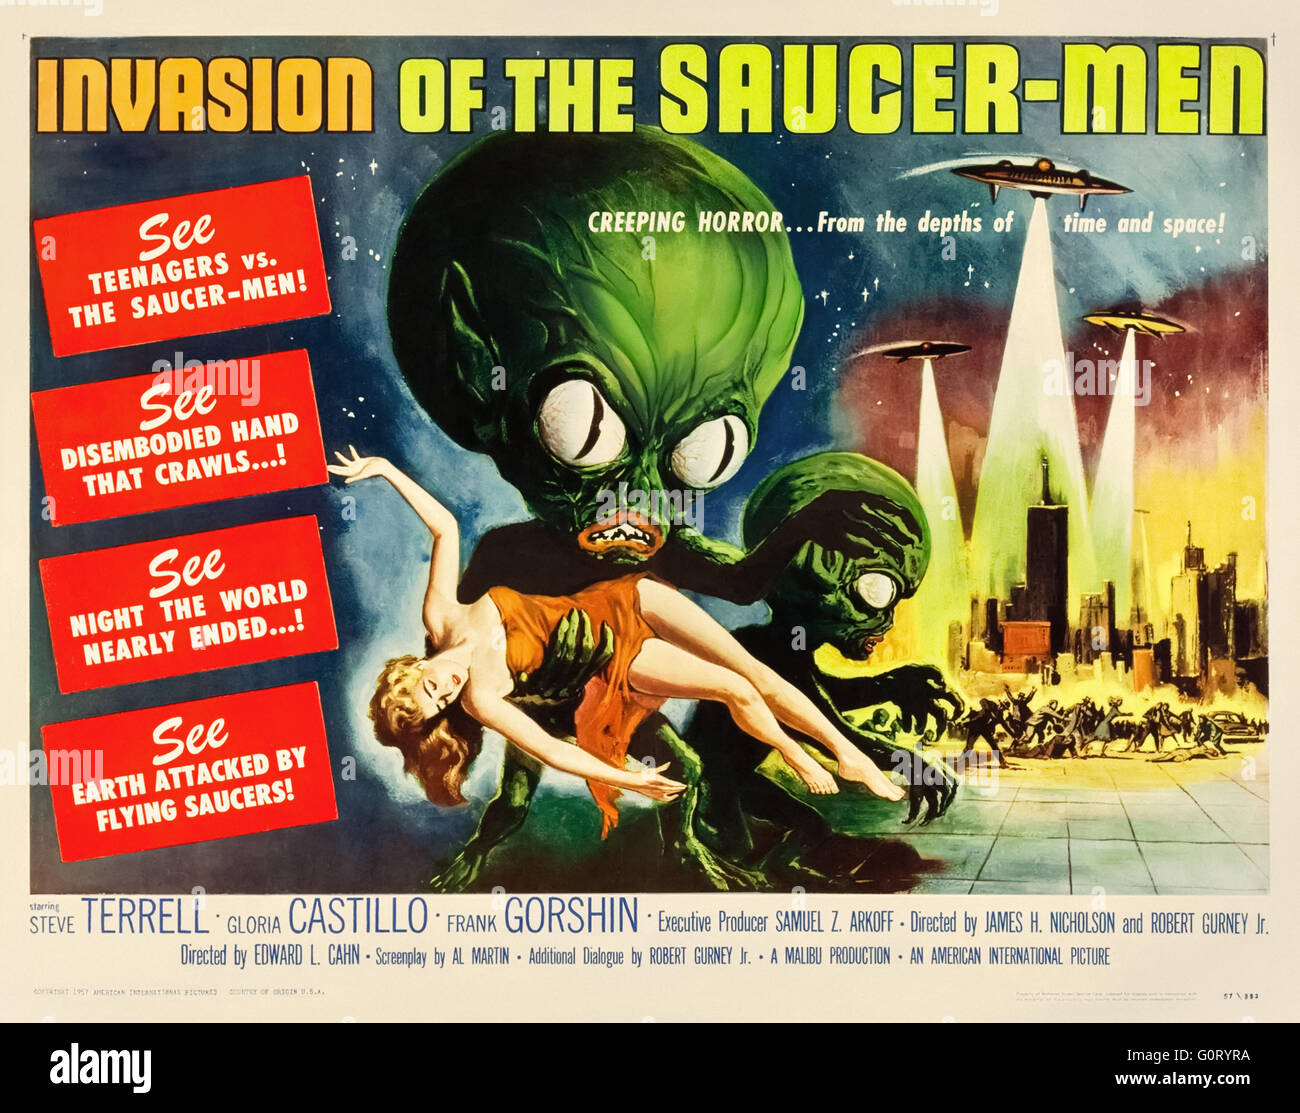 "Invasion de la Saucer-Men' (1957) réalisé par Edward L. Cahn et avec Steven Terrell, Gloria Castillo et Frank Gorshin. Voir la description pour plus d'informations. Banque D'Images